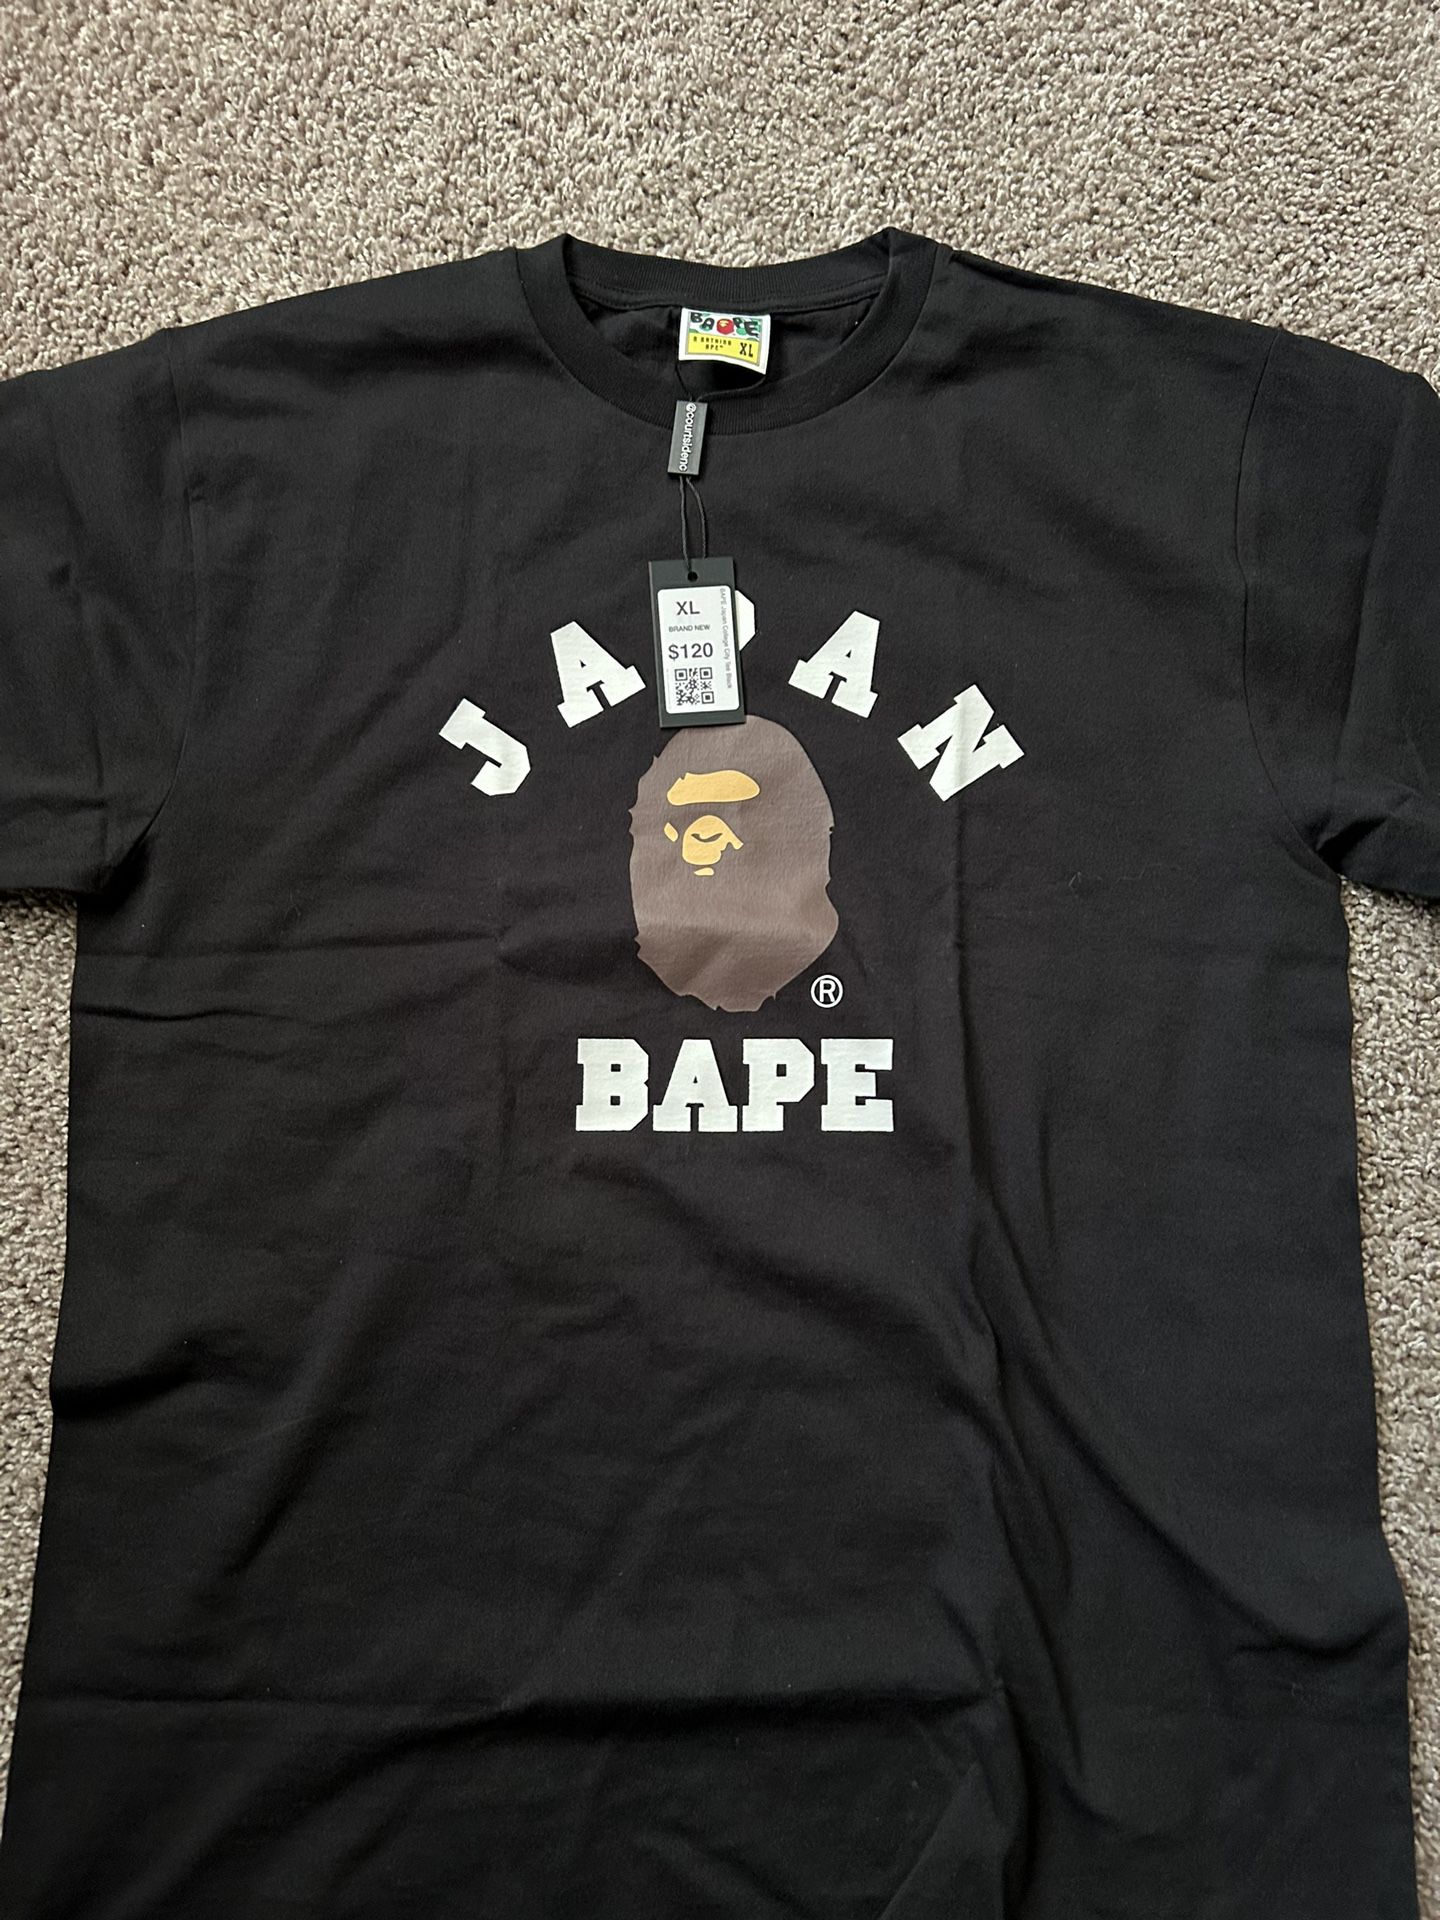 Bape “Japan” Shirt 